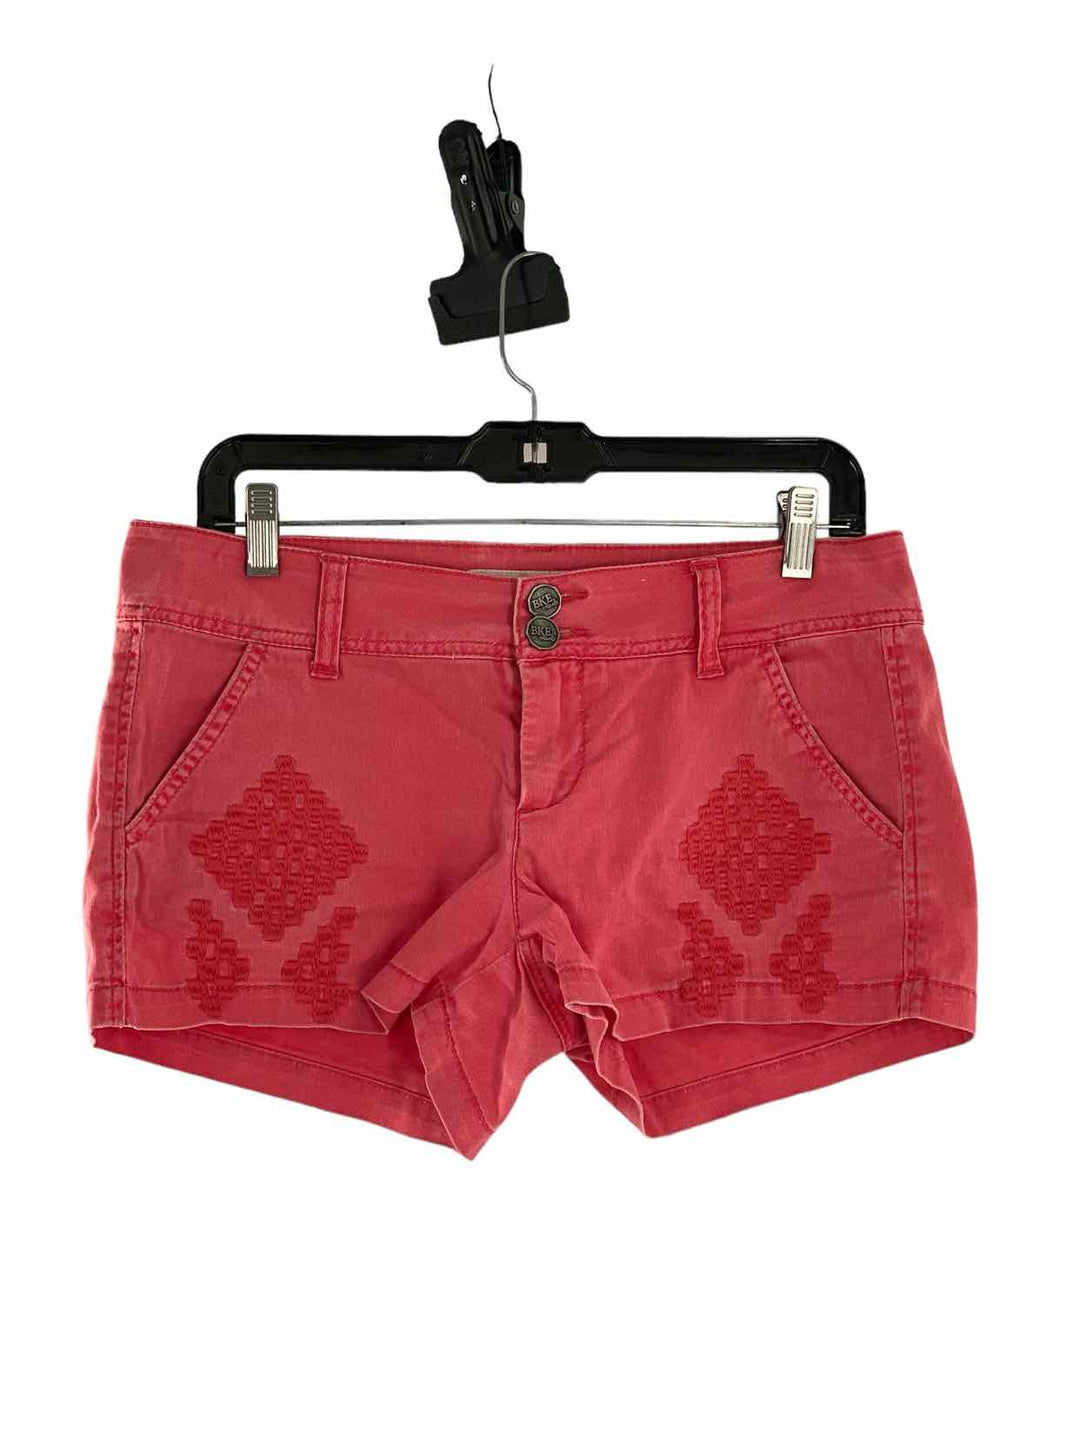 BKE Size 27 Pink Shorts